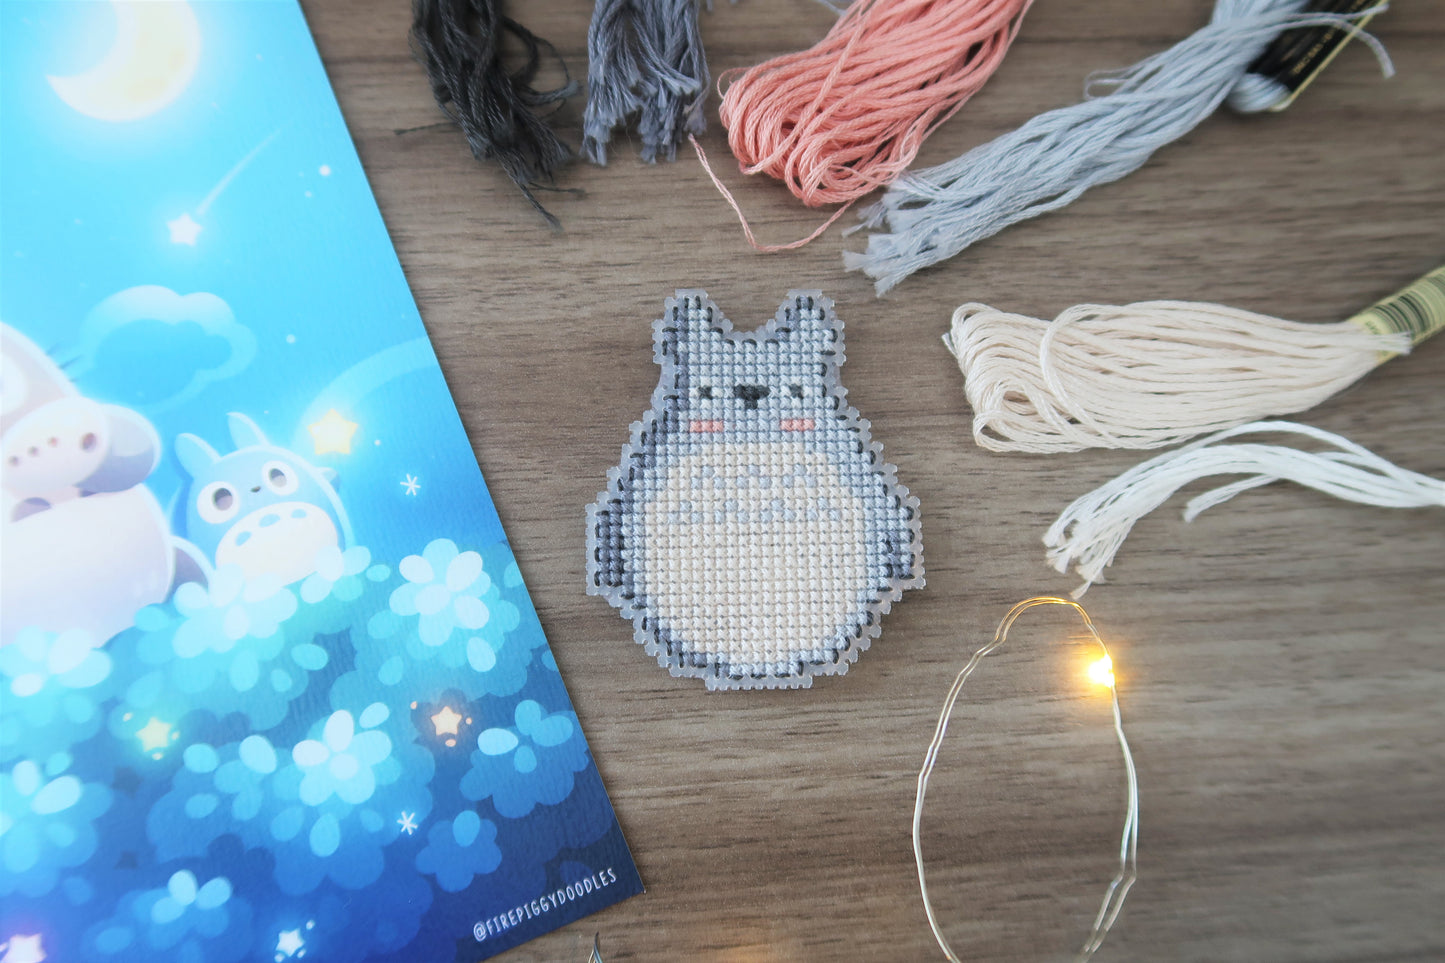 Totoro - Kit de magnet en point de croix